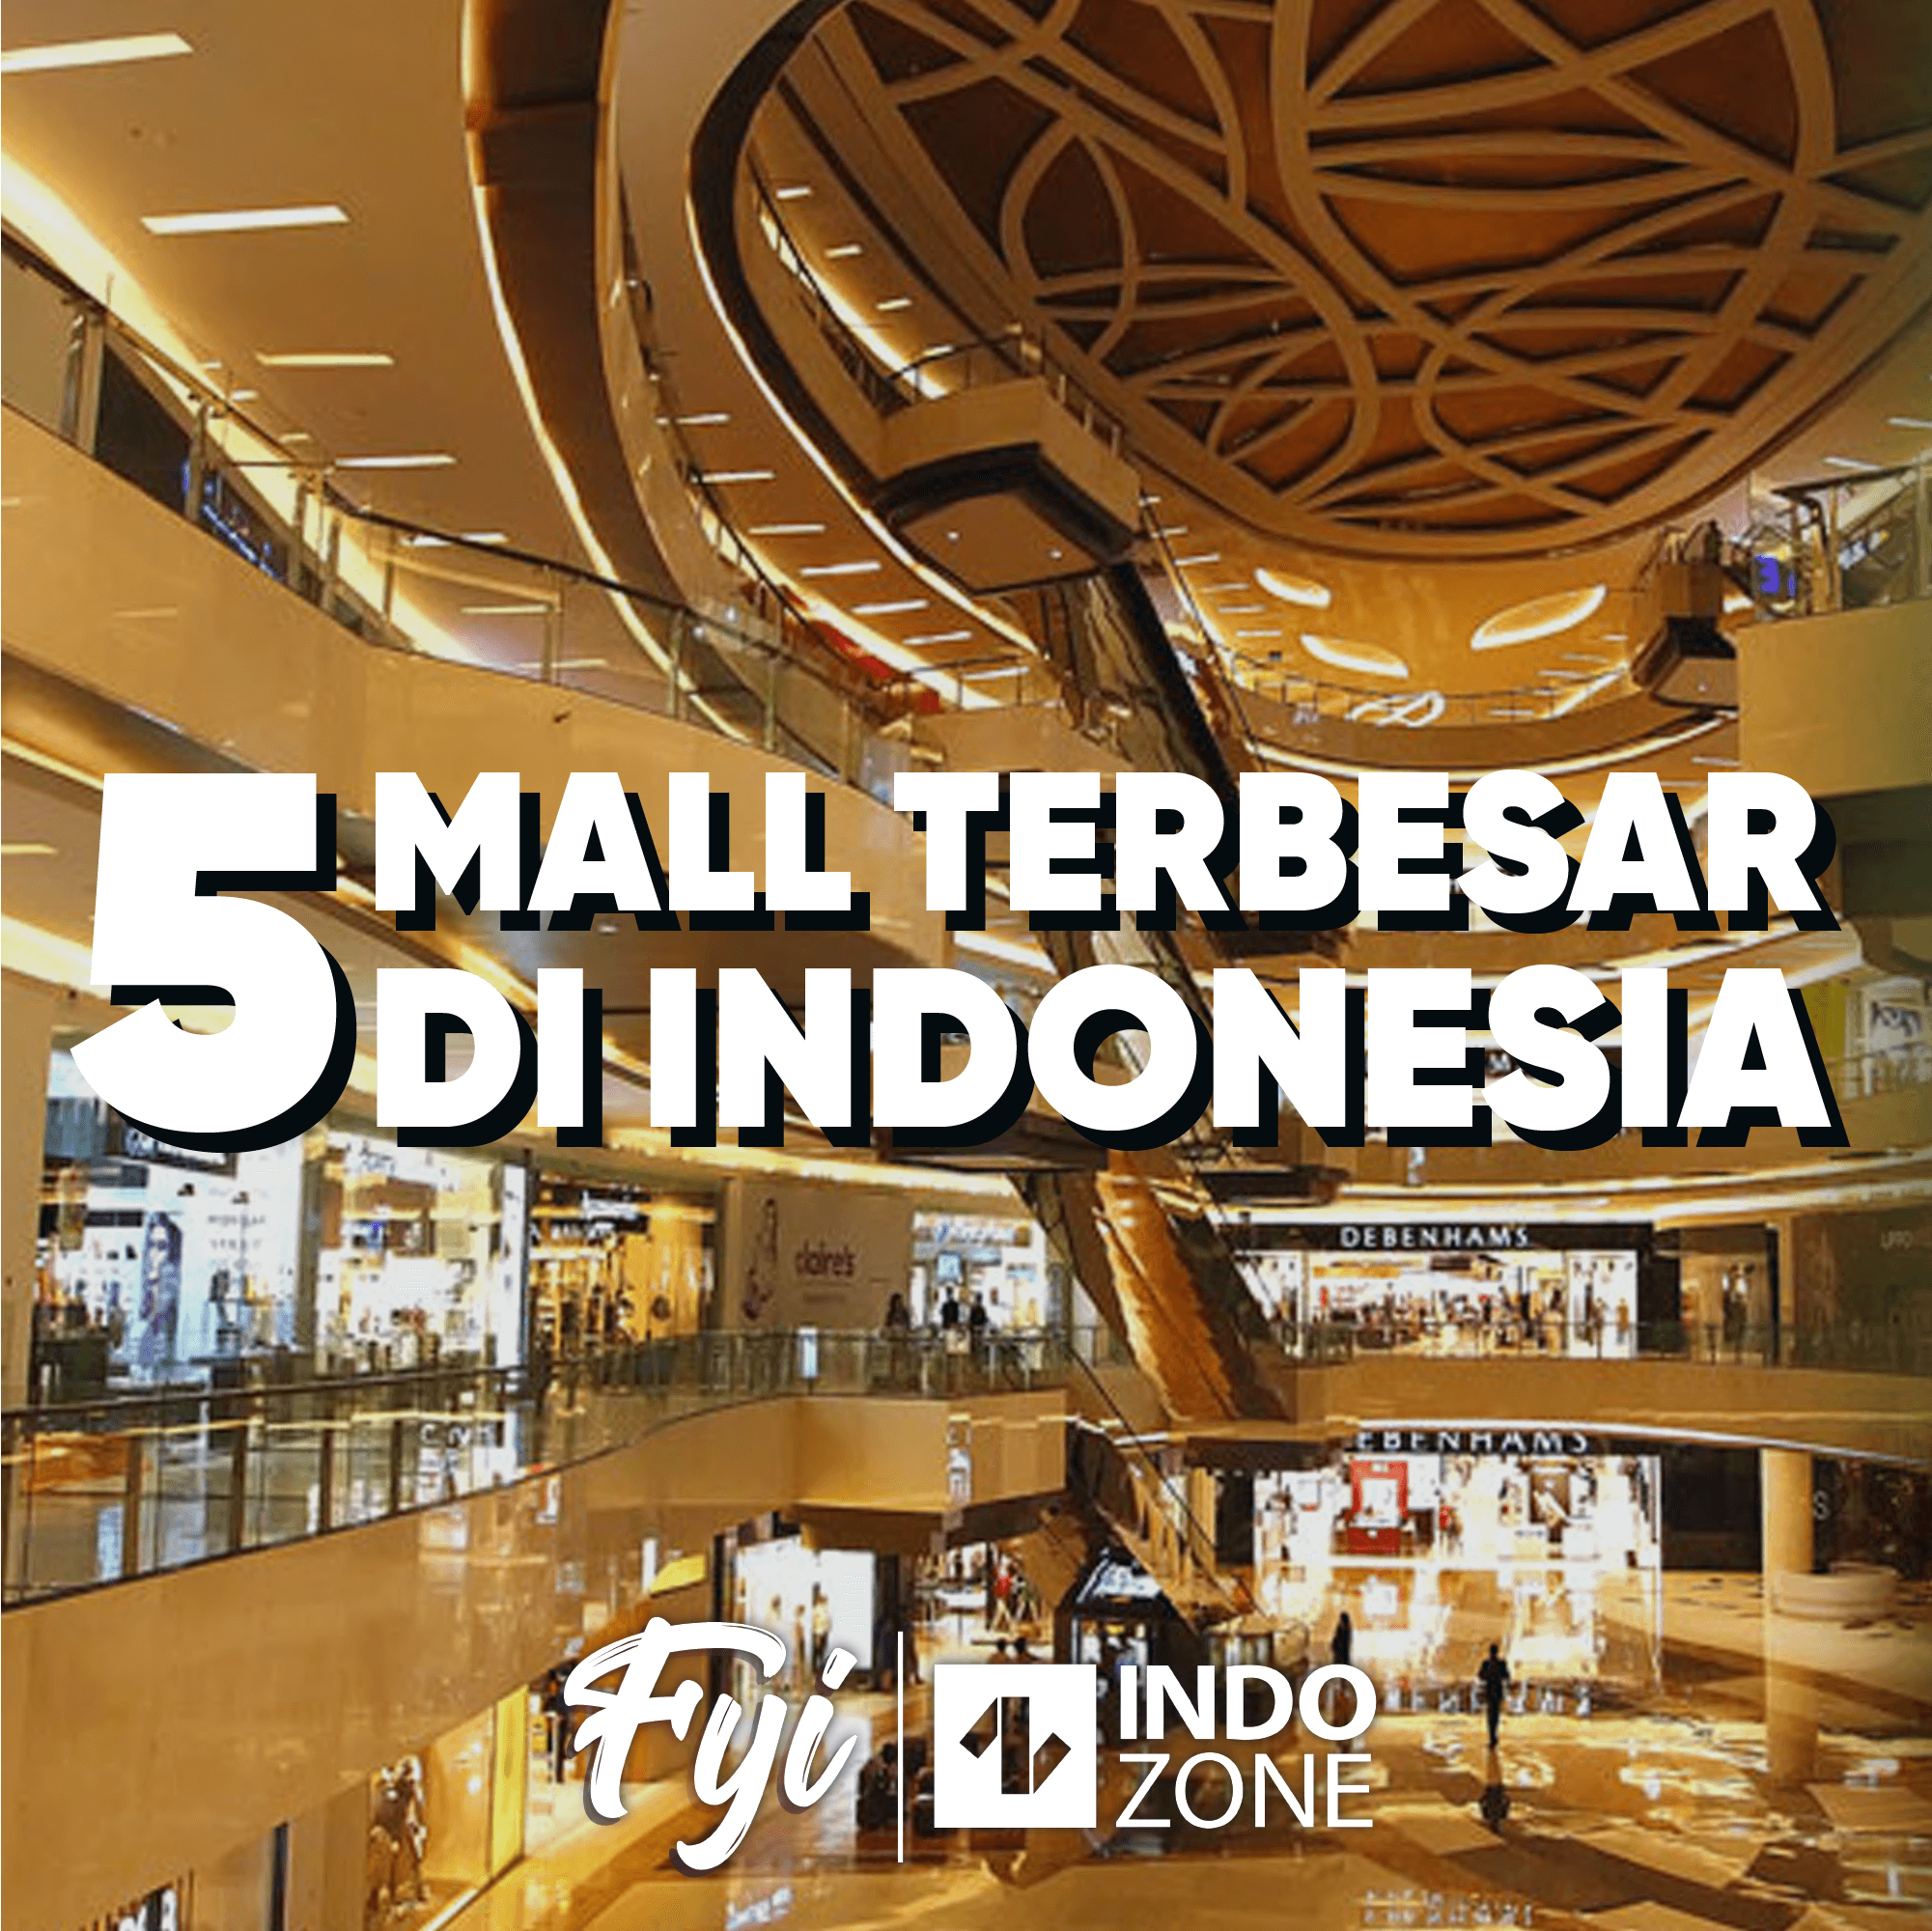 5 Mall Terbesar Di Indonesia | Indozone.id